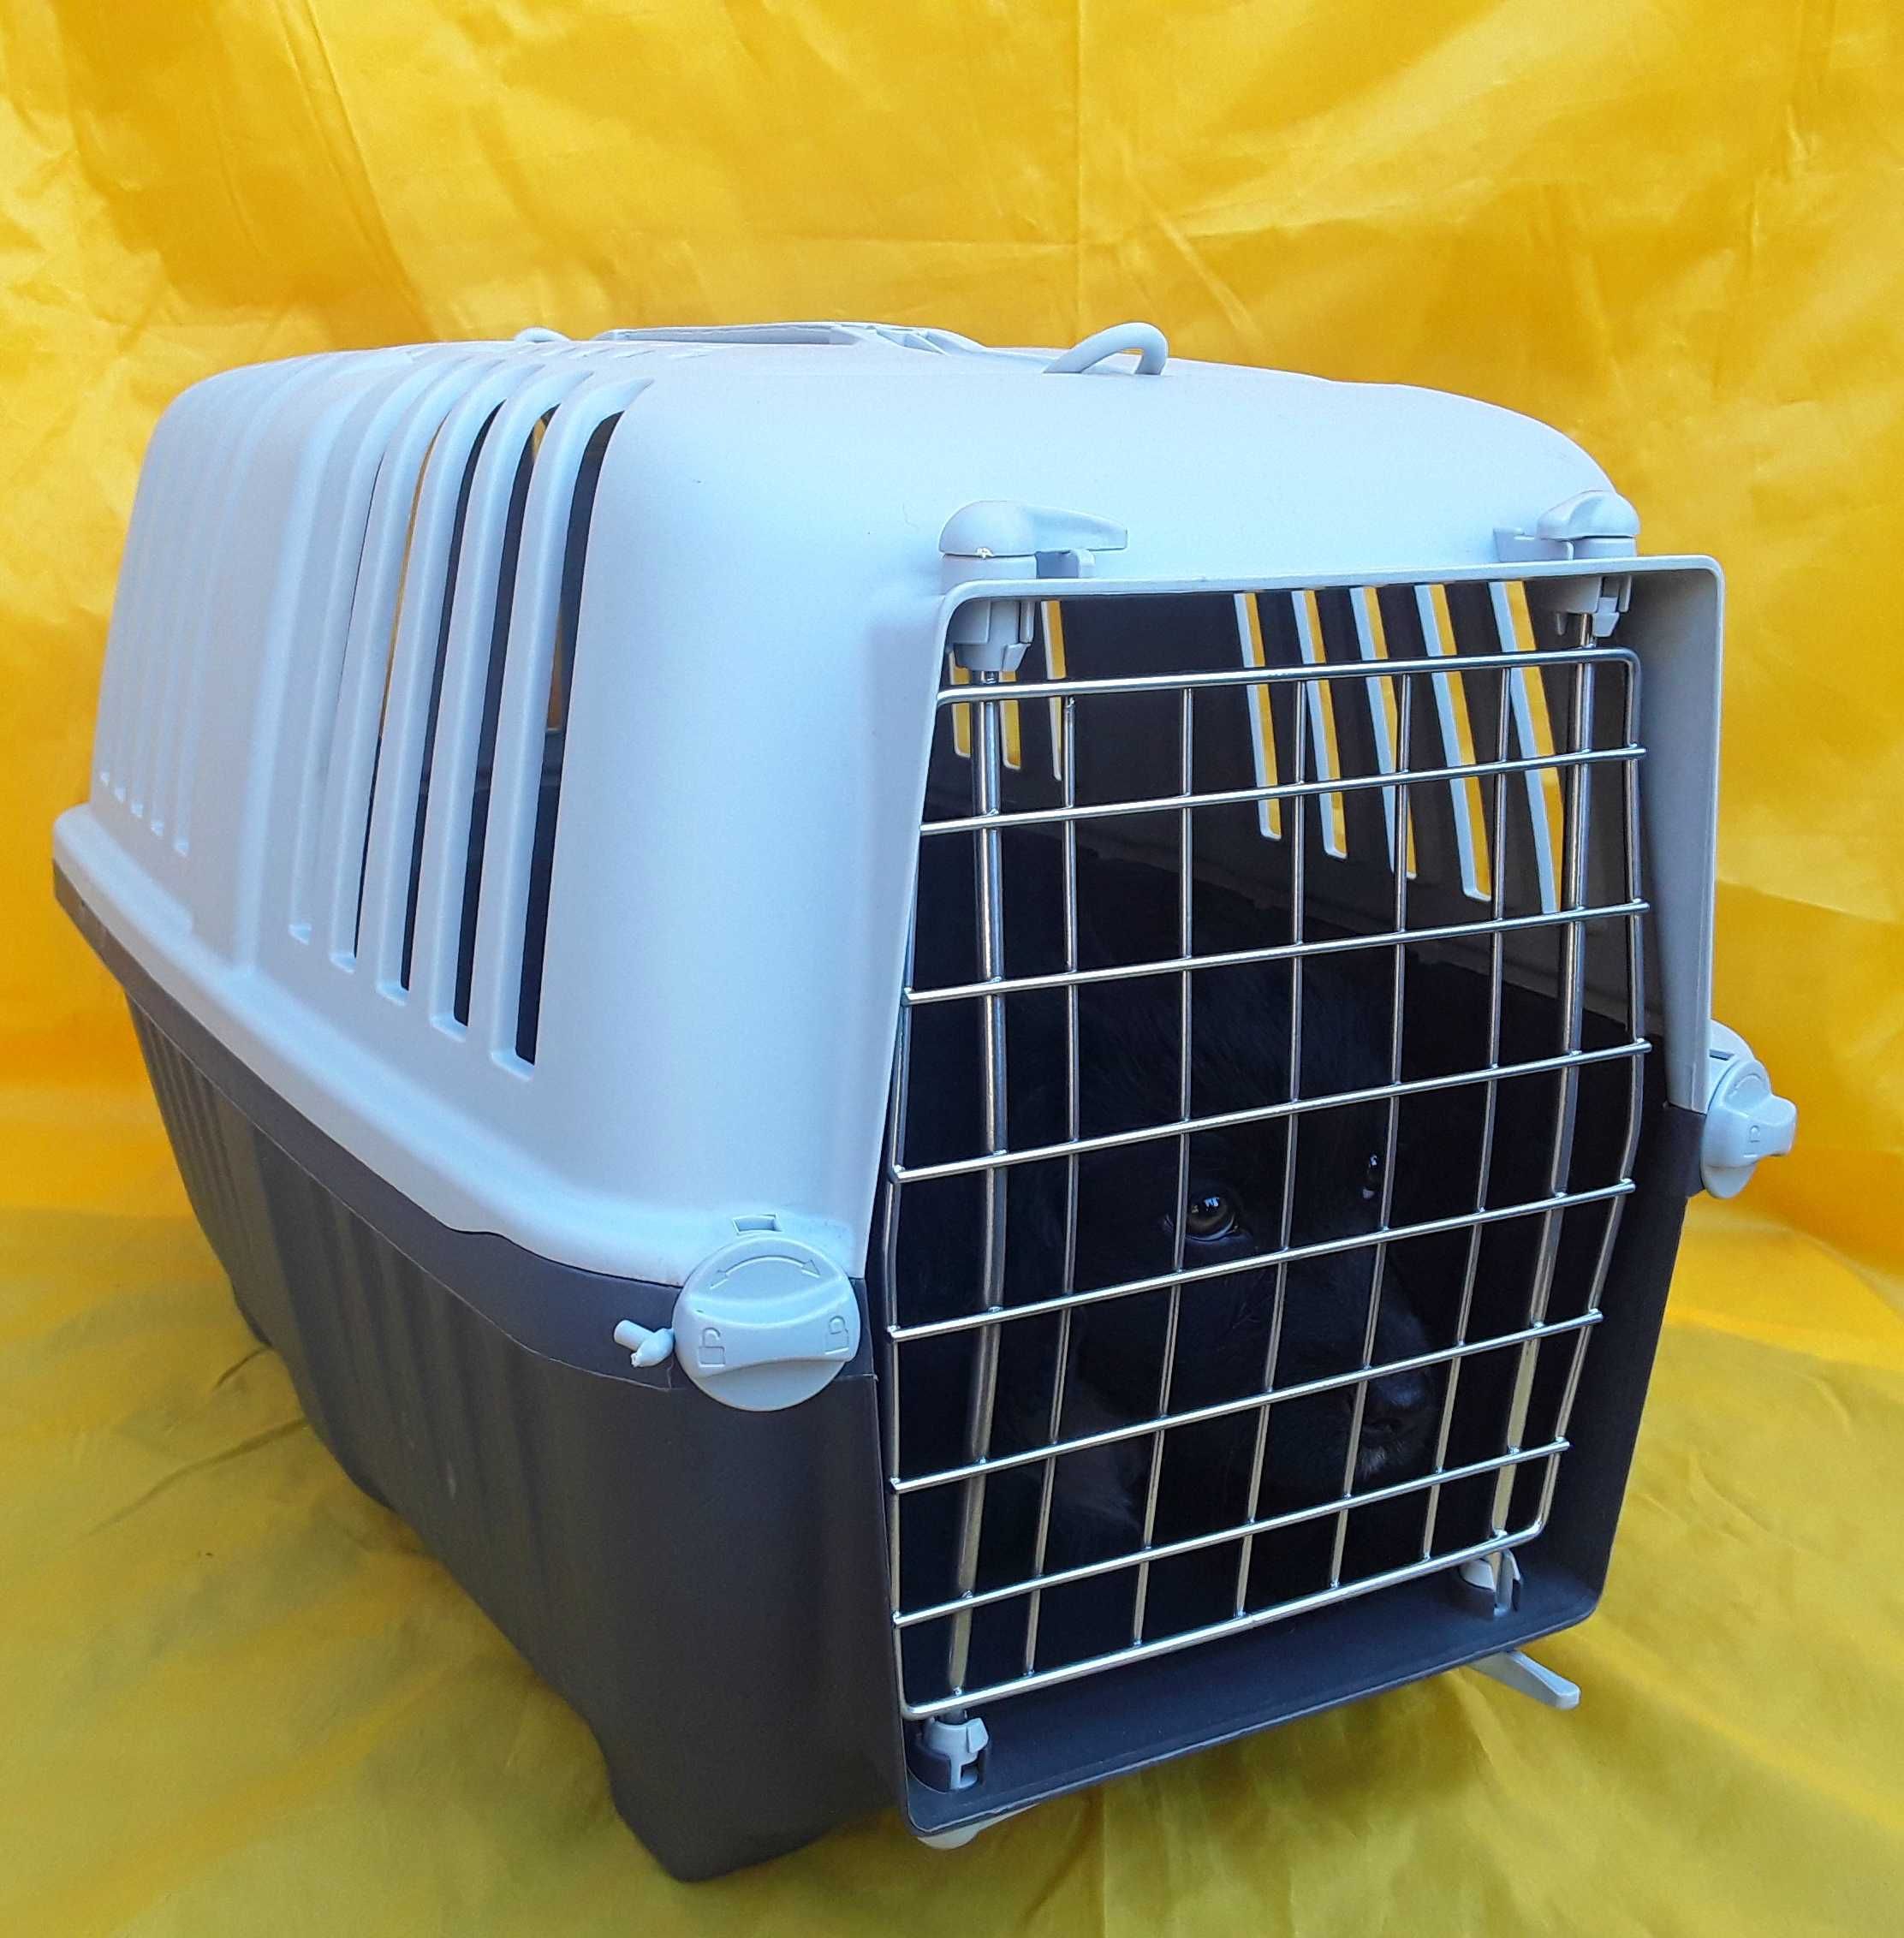 Cușca pentru transport confortabil animalelor de companie NOUA -75 Lei